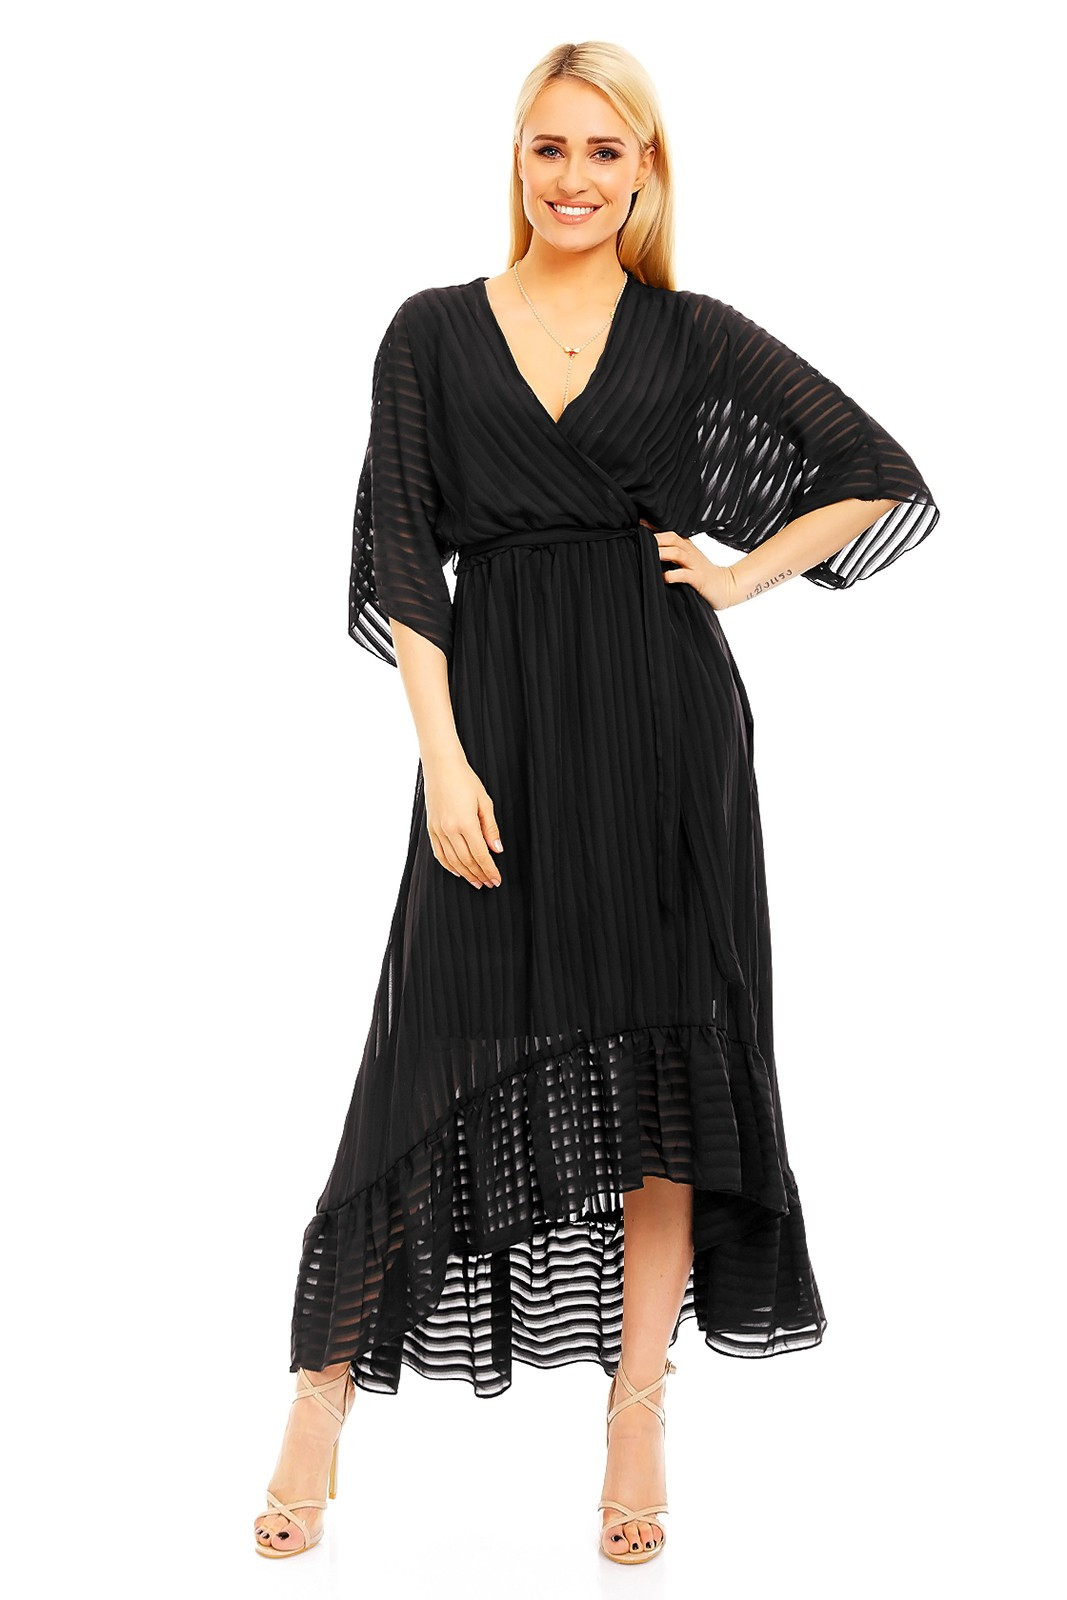 Lehké dámské šaty s asymetrickou sukní černé - LULU&LOVE černá M/L